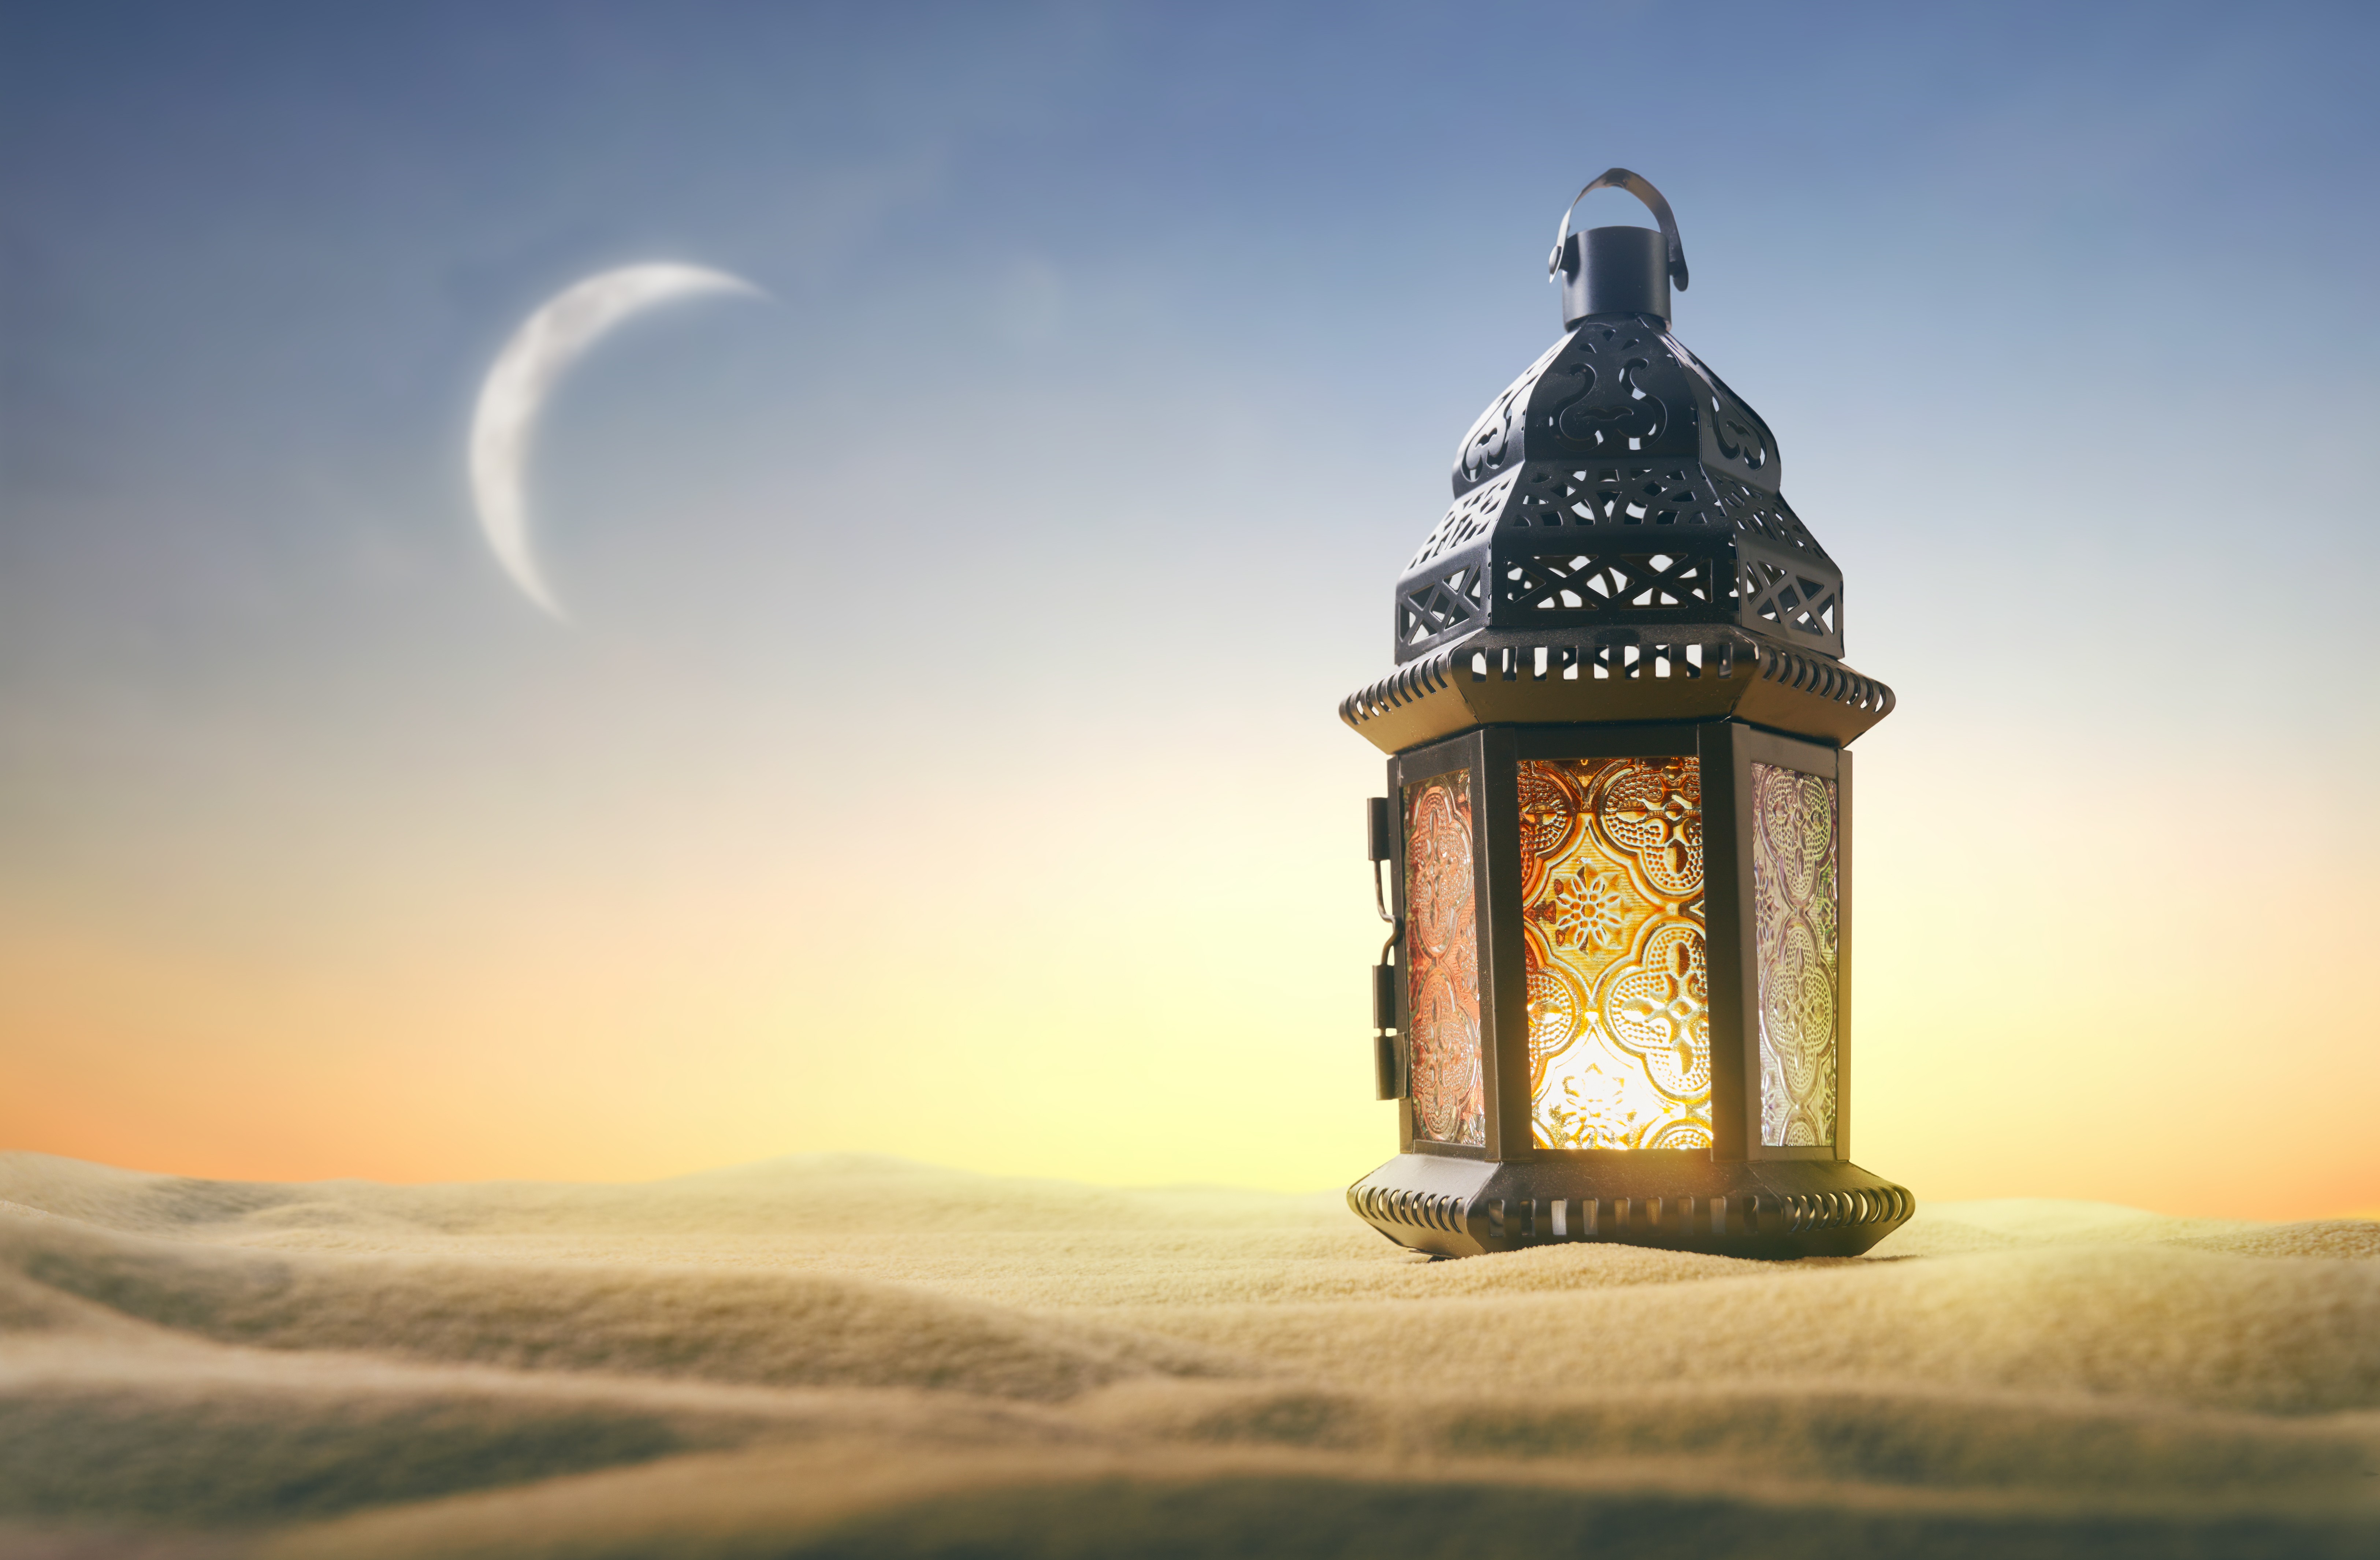 ornamental-arabic-lantern-with-burning-candle.jpg